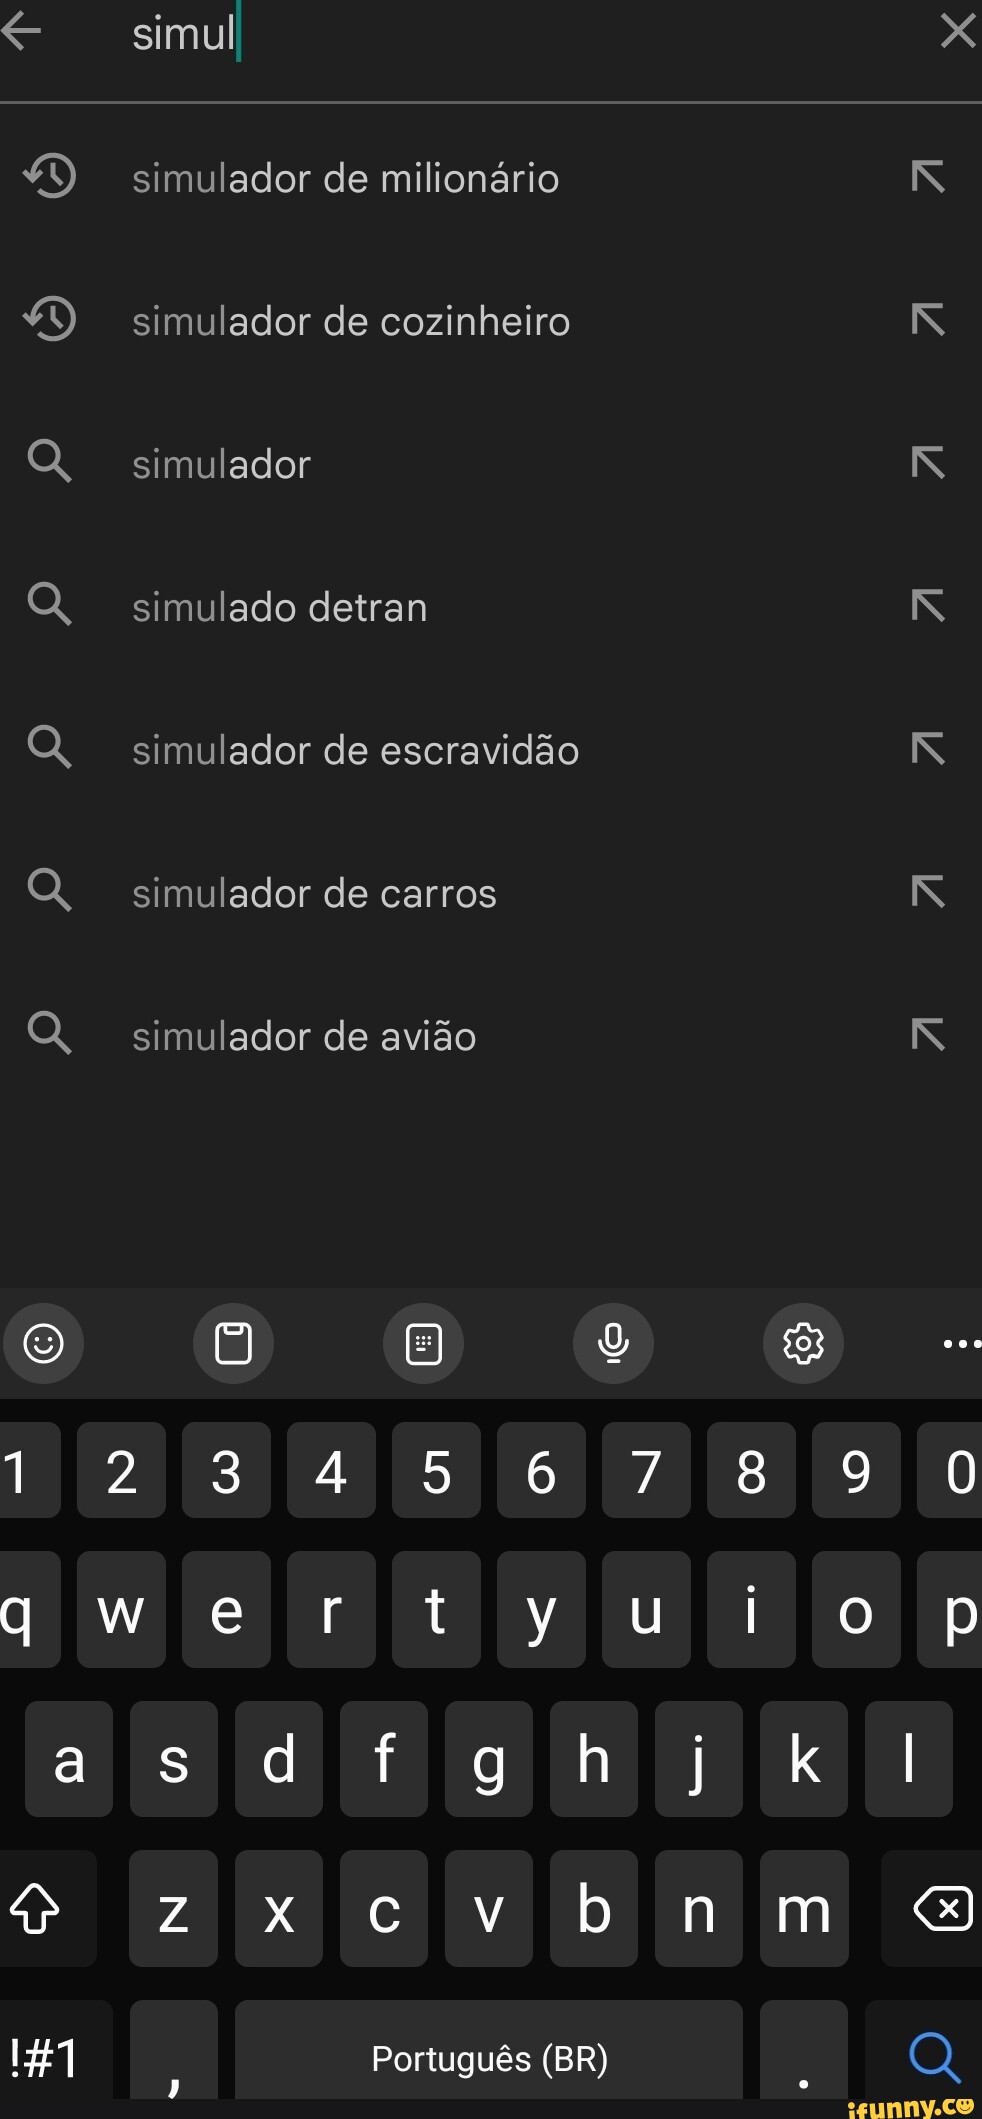 Simulador de Escravidão ago - iFunny Brazil